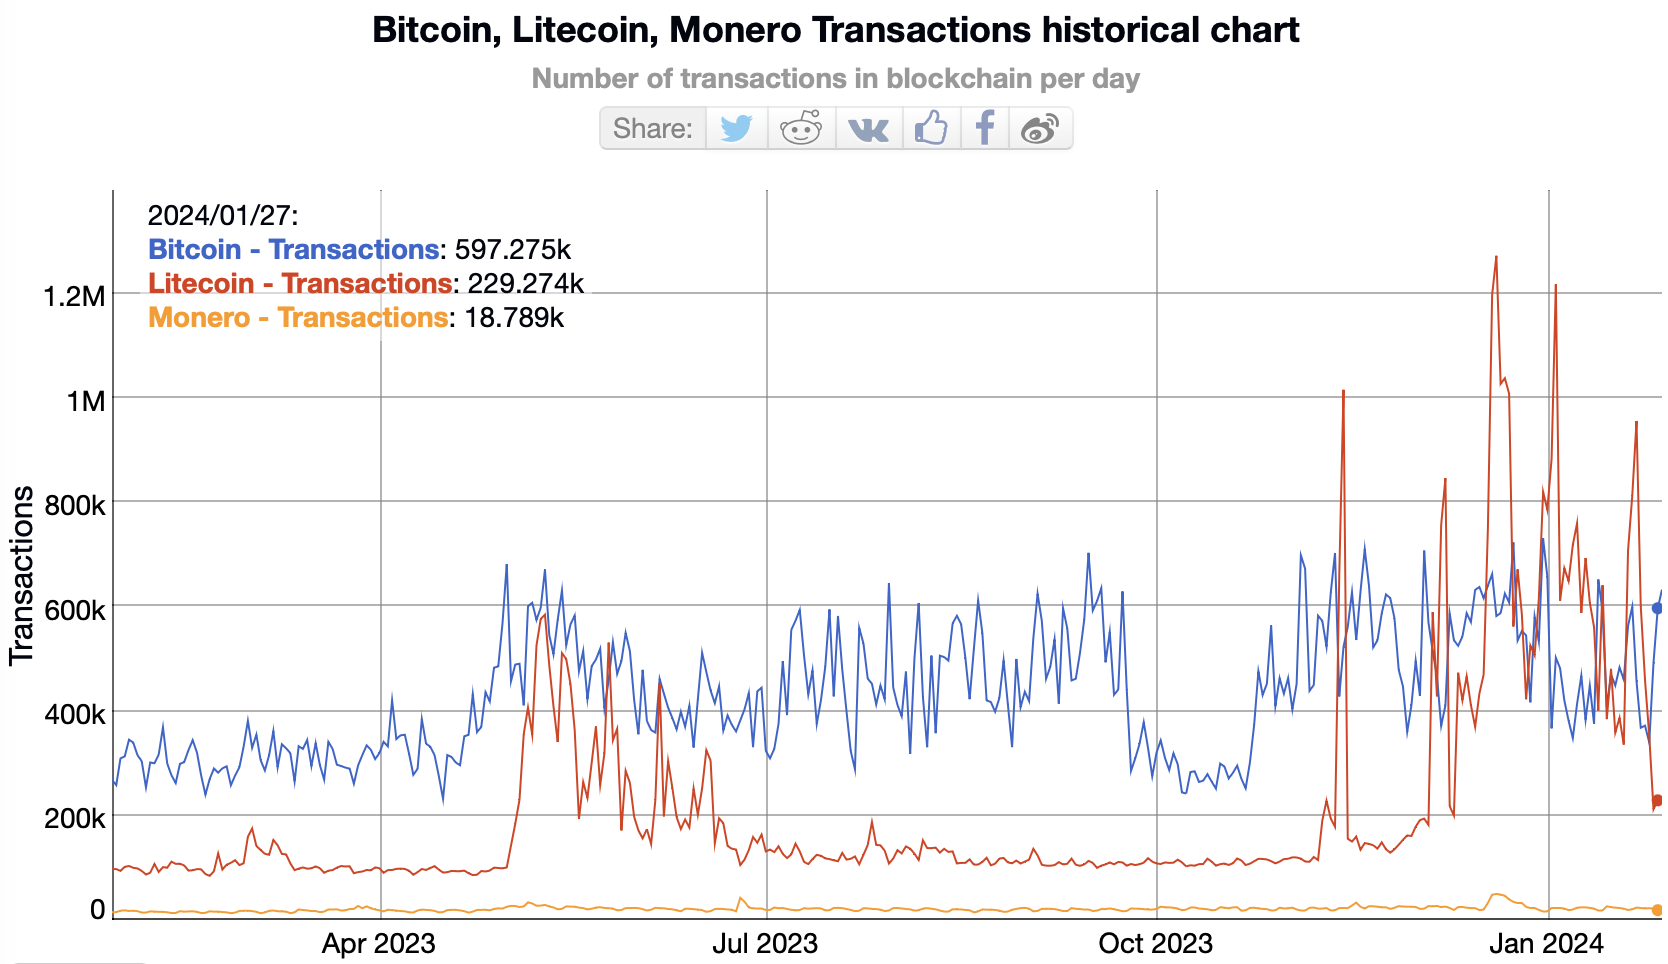 Bitcoin, Litecoin, Monero daily transaction counts.